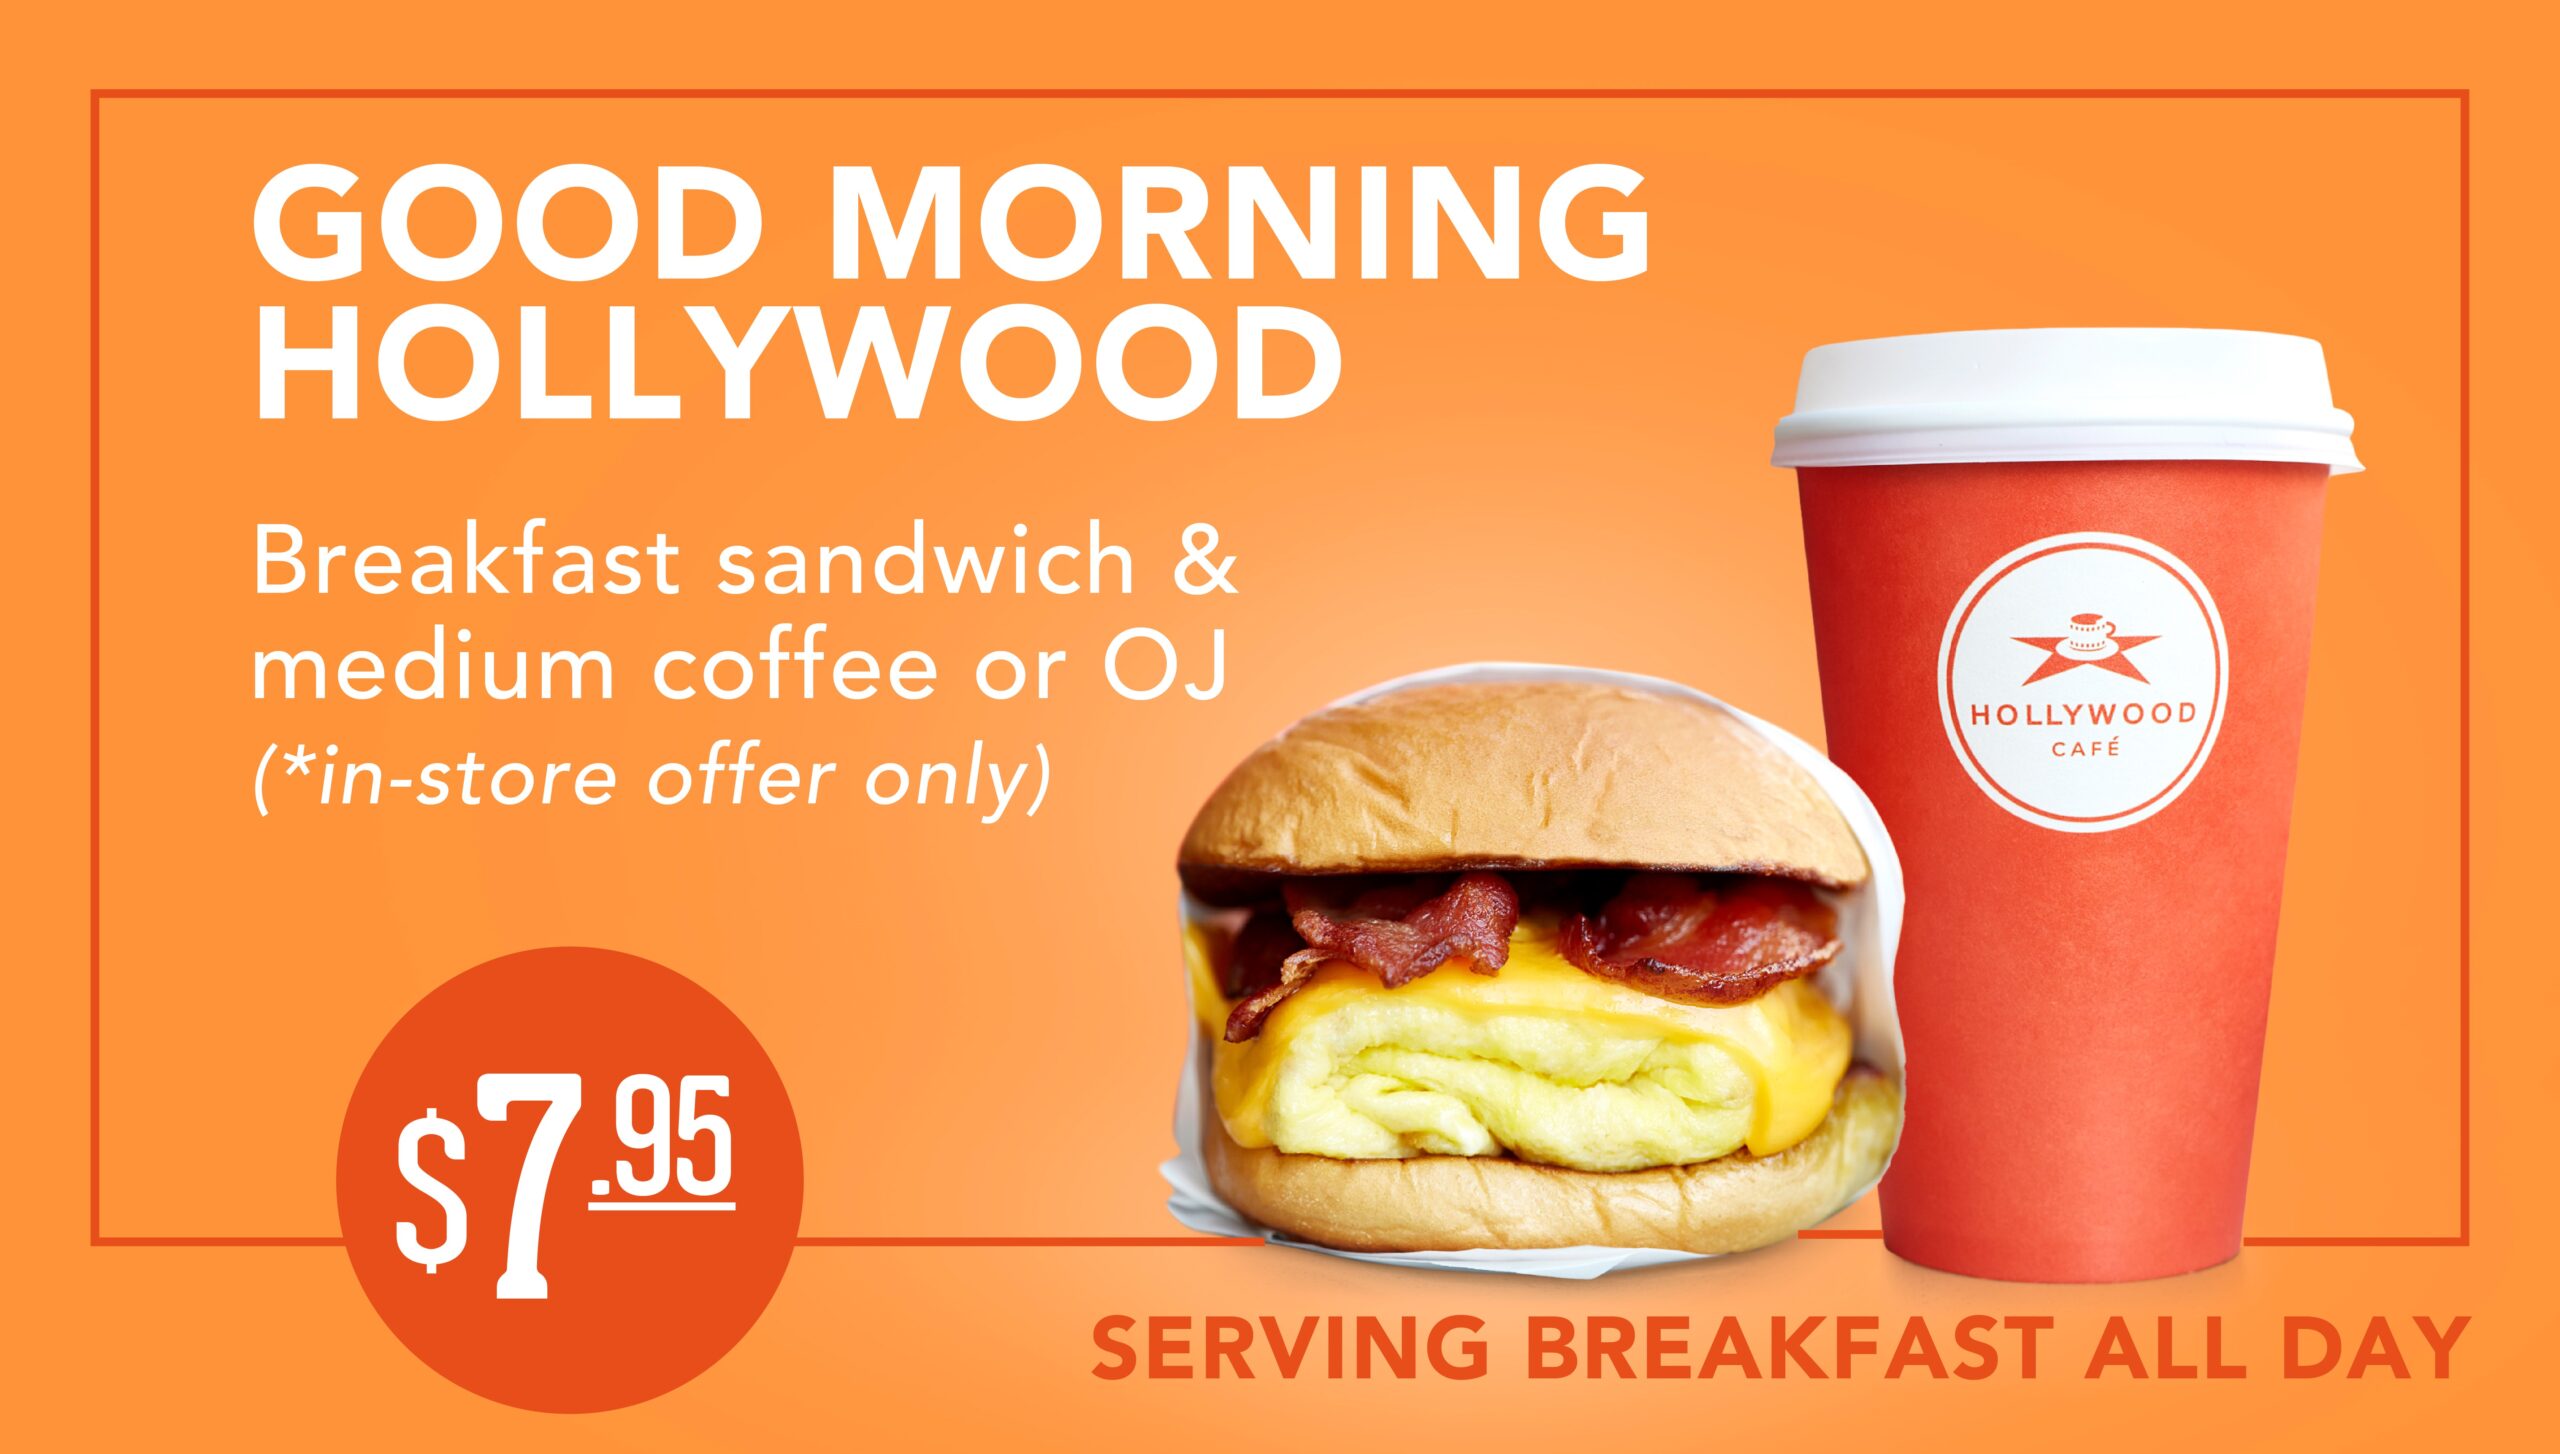 Good morning Hollywood! Breakfast sandwich, medium coffee or o.j. for $7.95